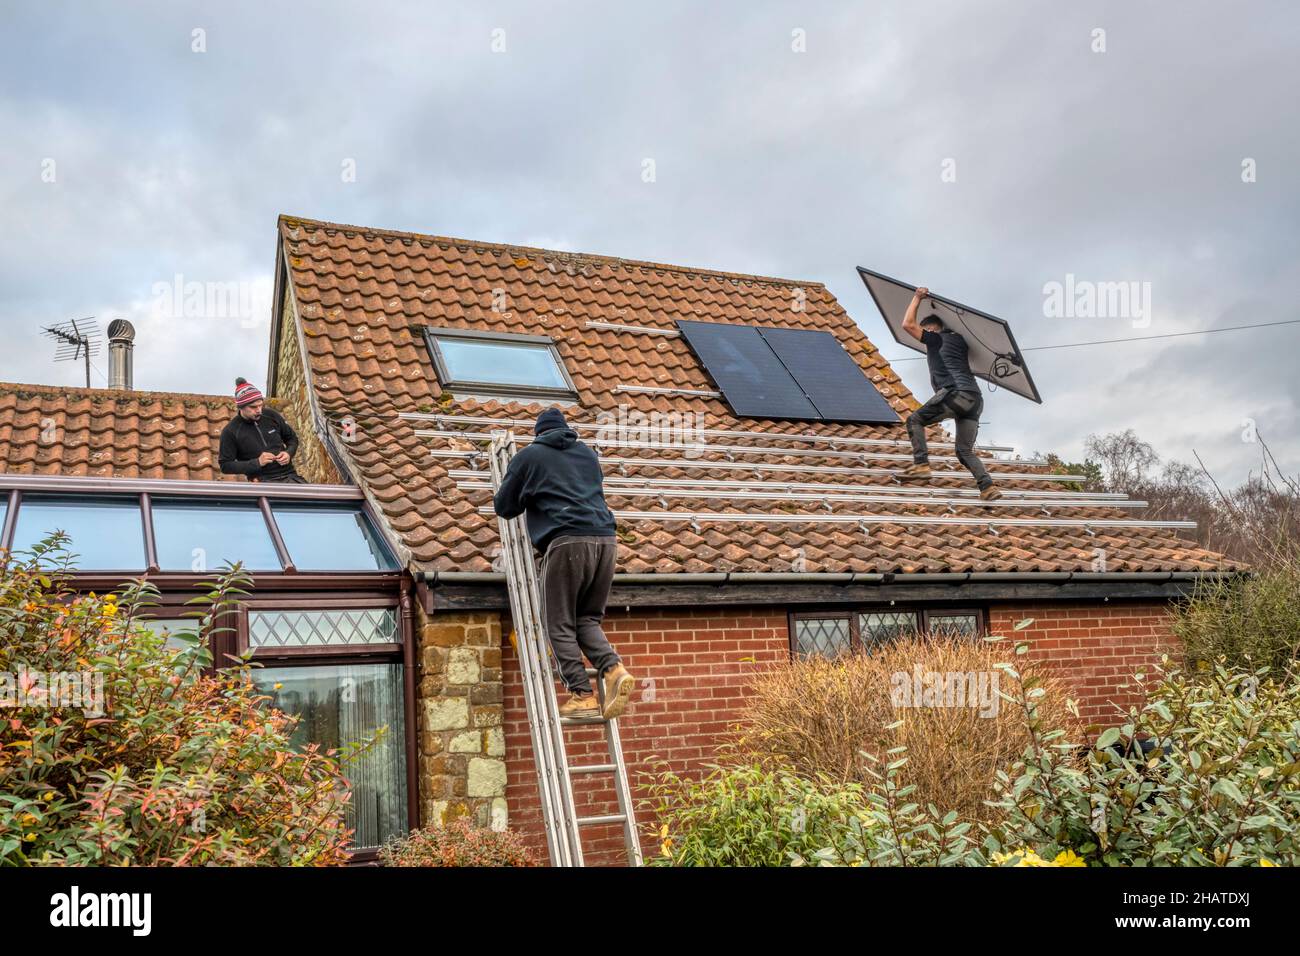 Lavoratori che installano pannelli solari o celle pv sul tetto a pannelli di un cottage Norfolk. NB: I locali nella fotografia sono proprietà liberate. Foto Stock